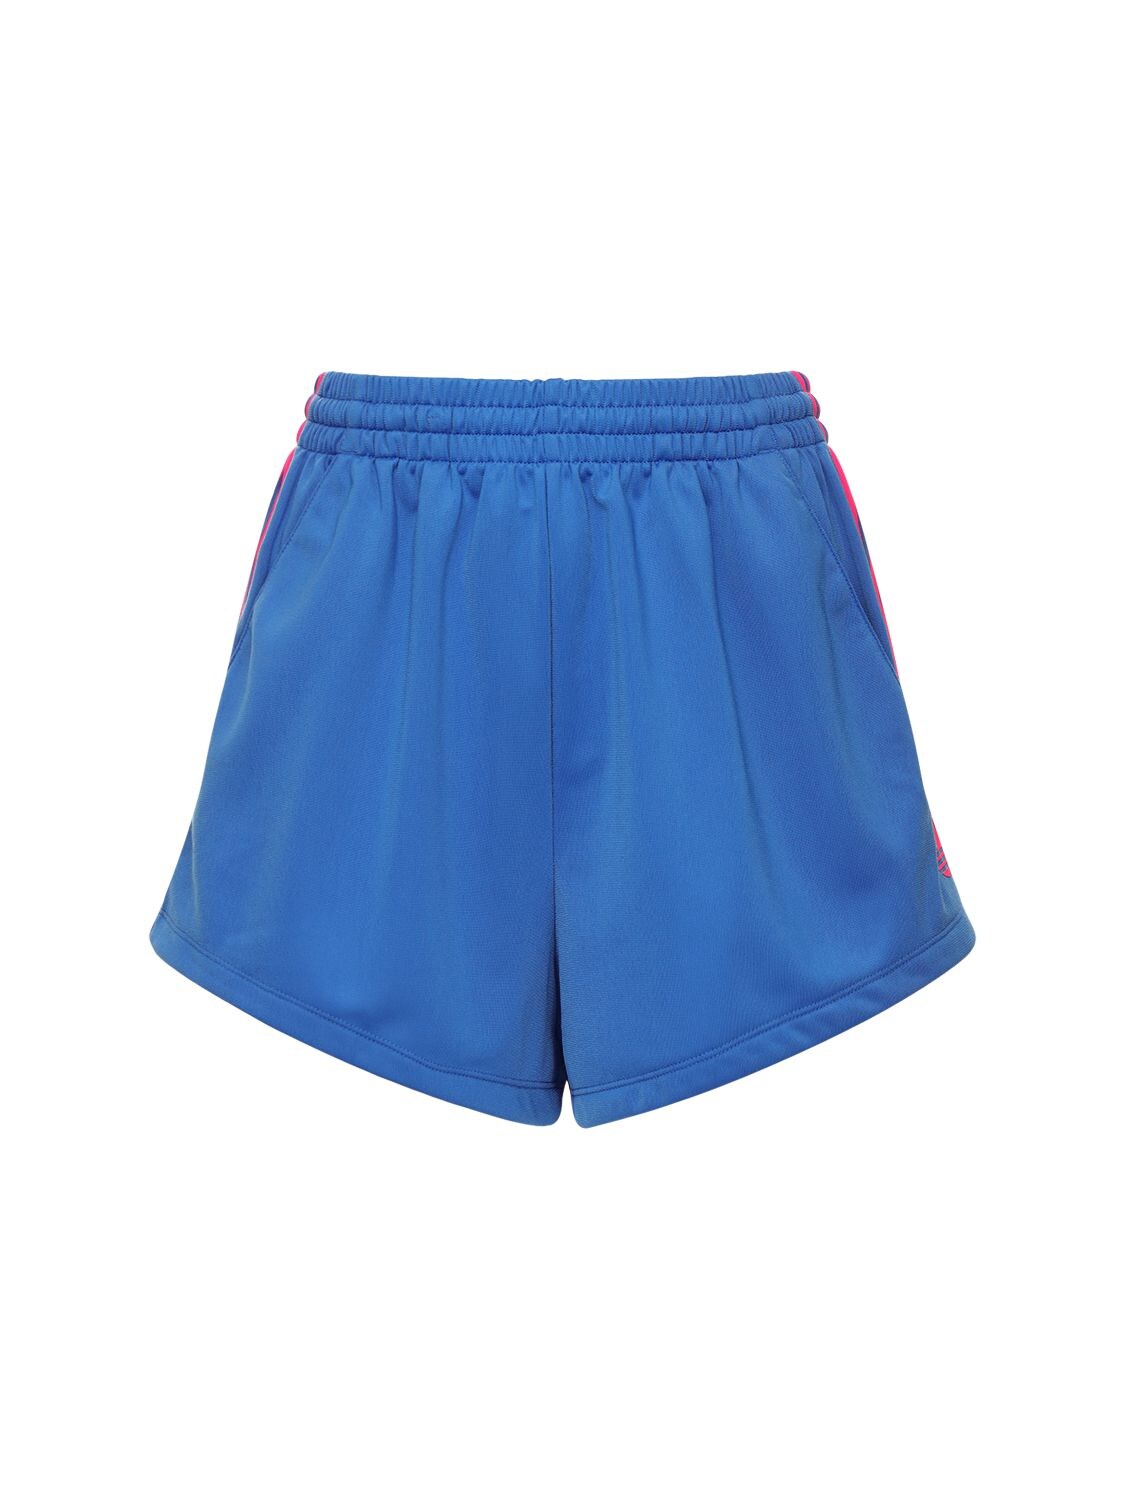 Adidas Originals Adidas Women's Originals Adicolor 3d Trefoil Shorts In Blue